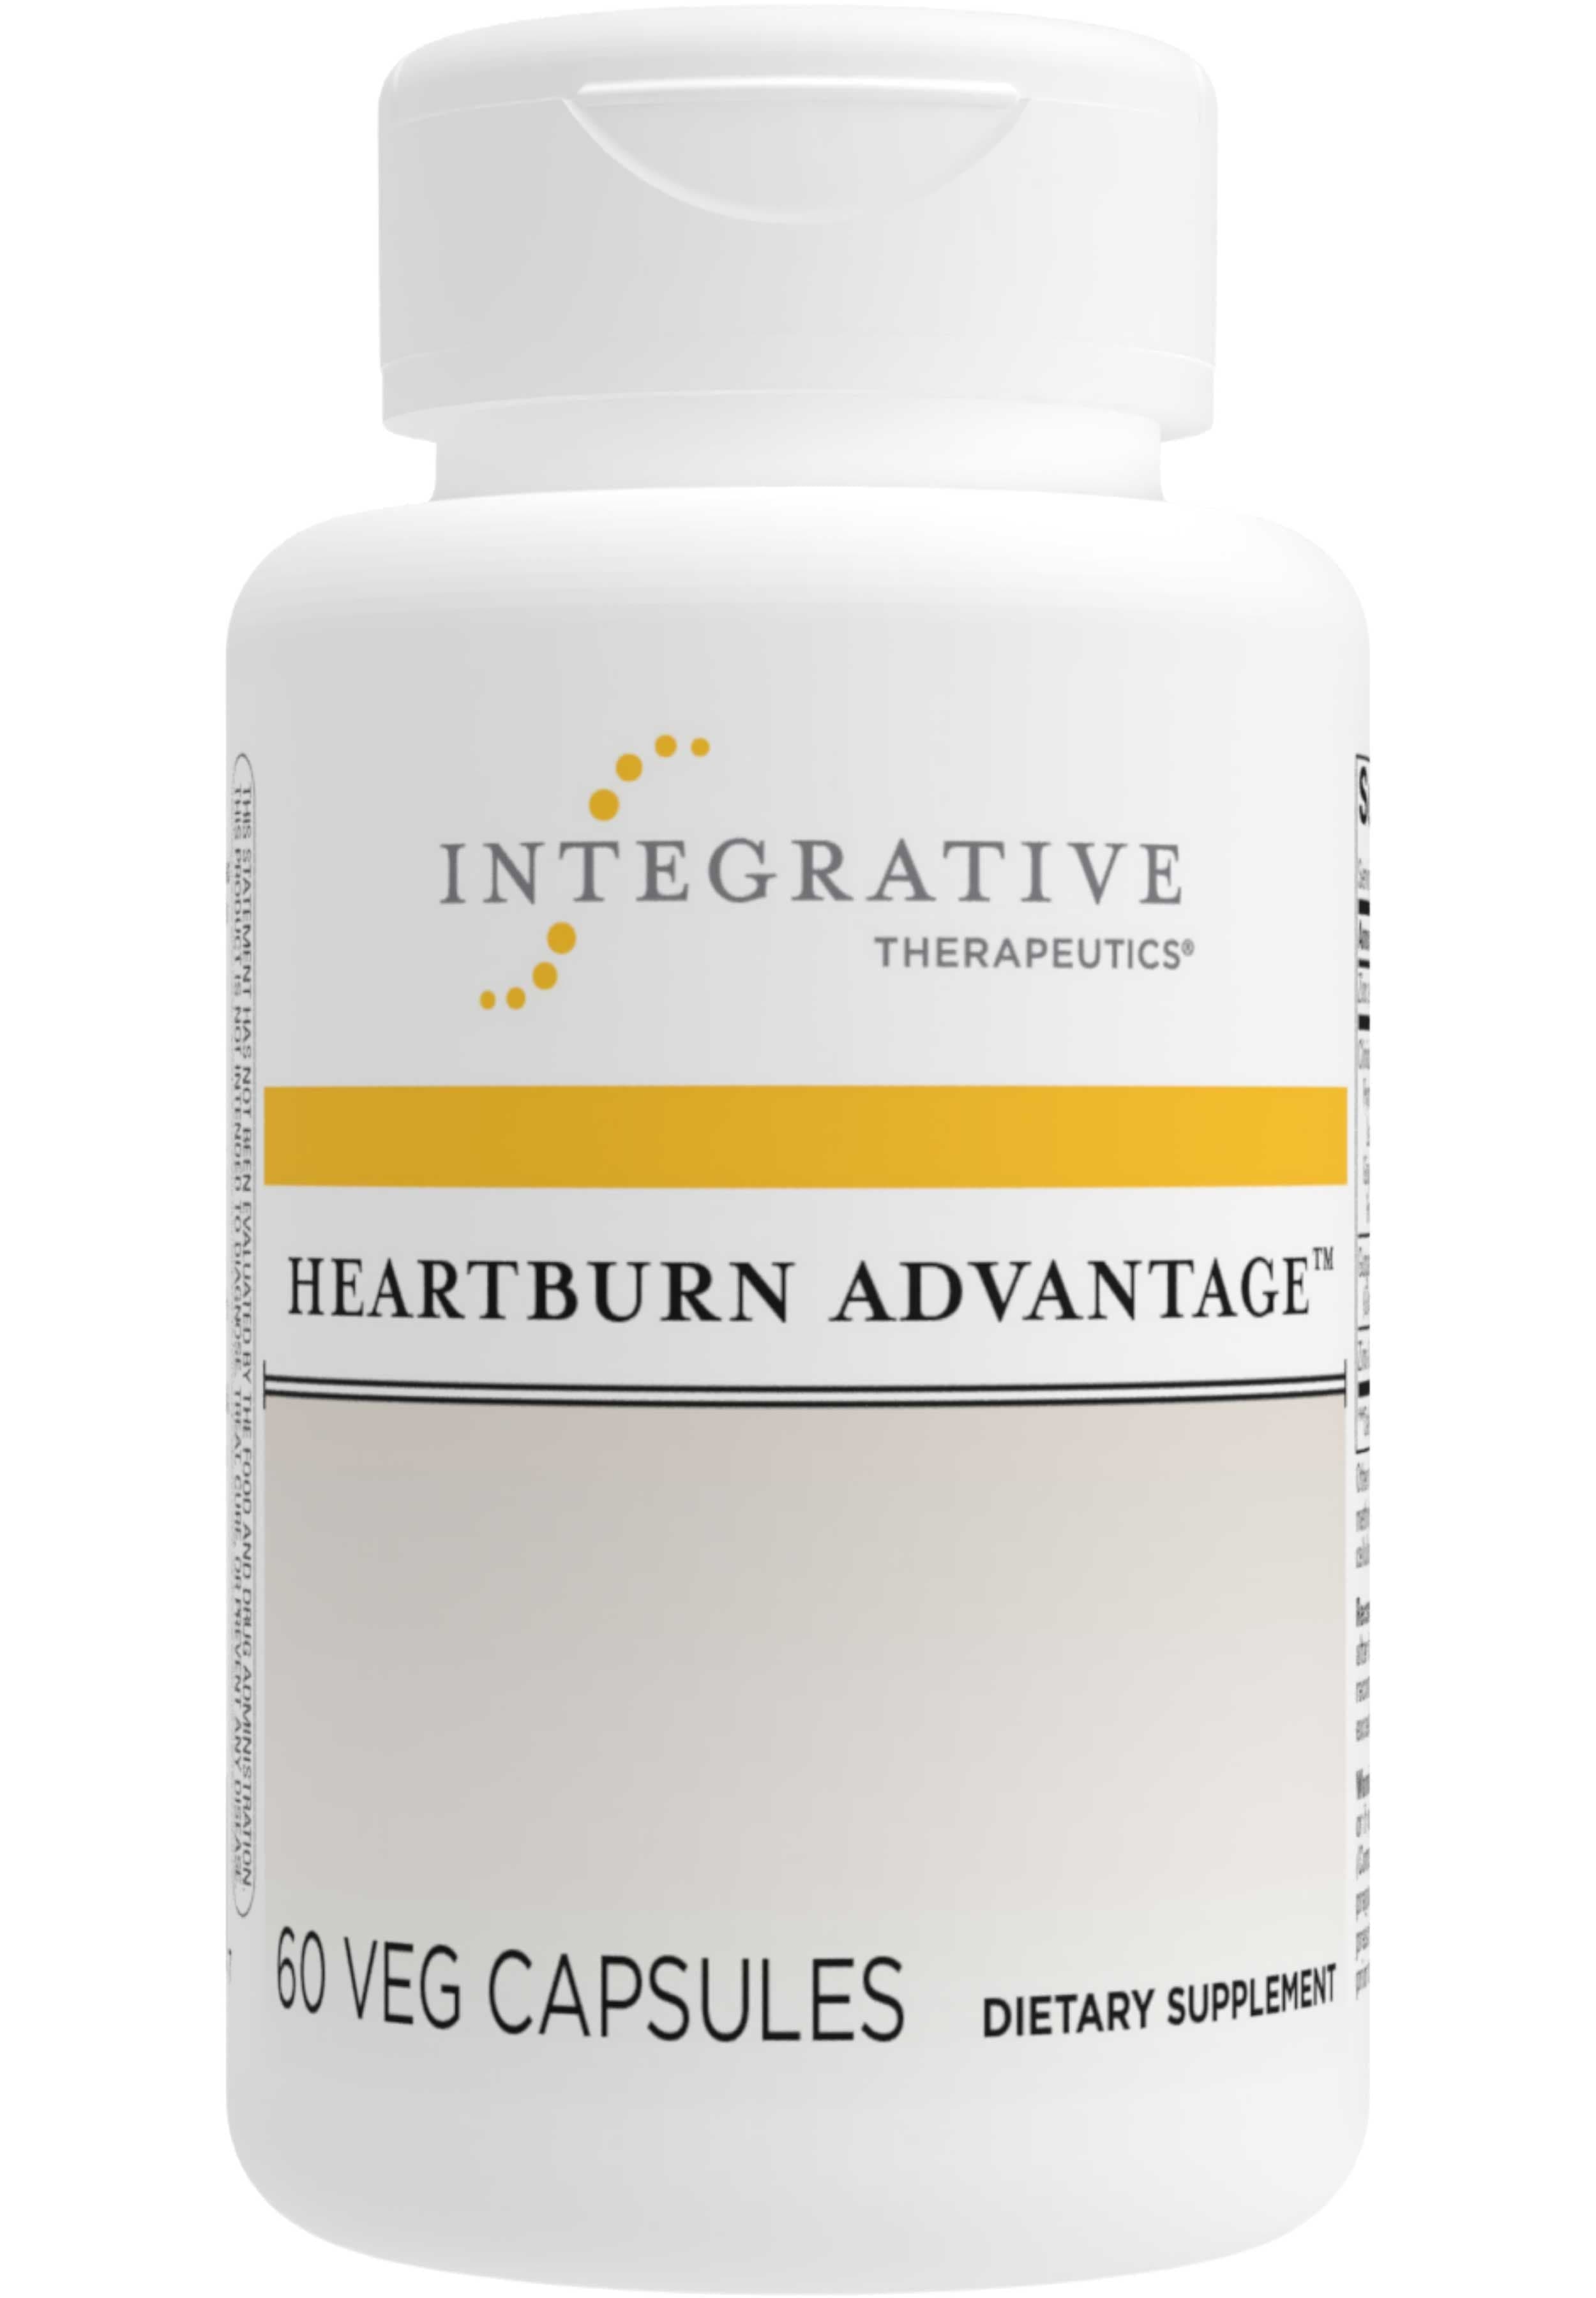 Integrative Therapeutics Heartburn Advantage